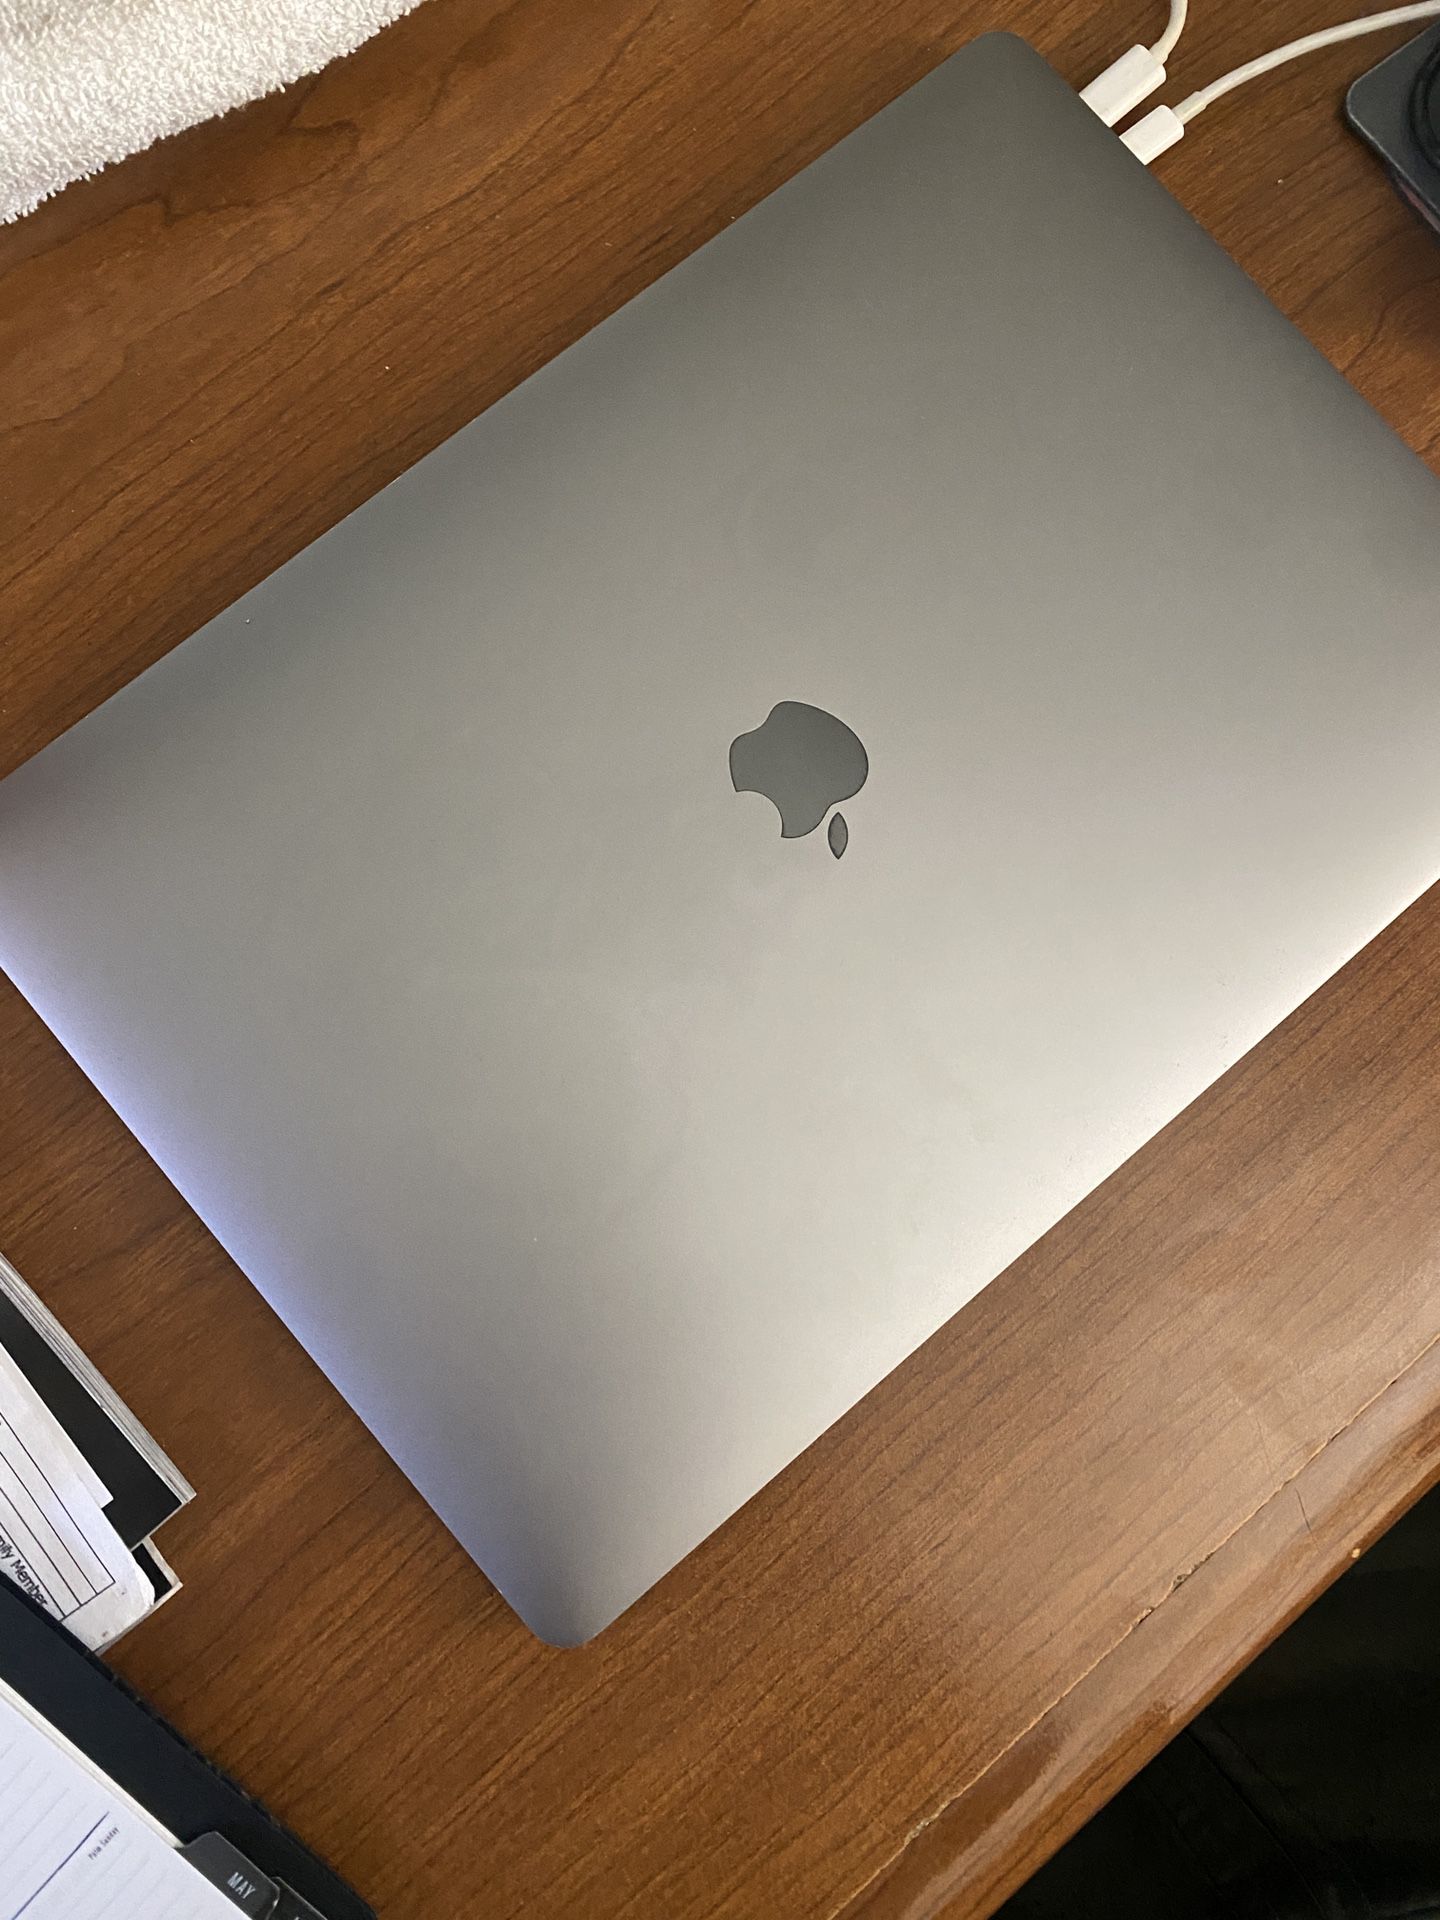 2016 MacBook Pro 15”